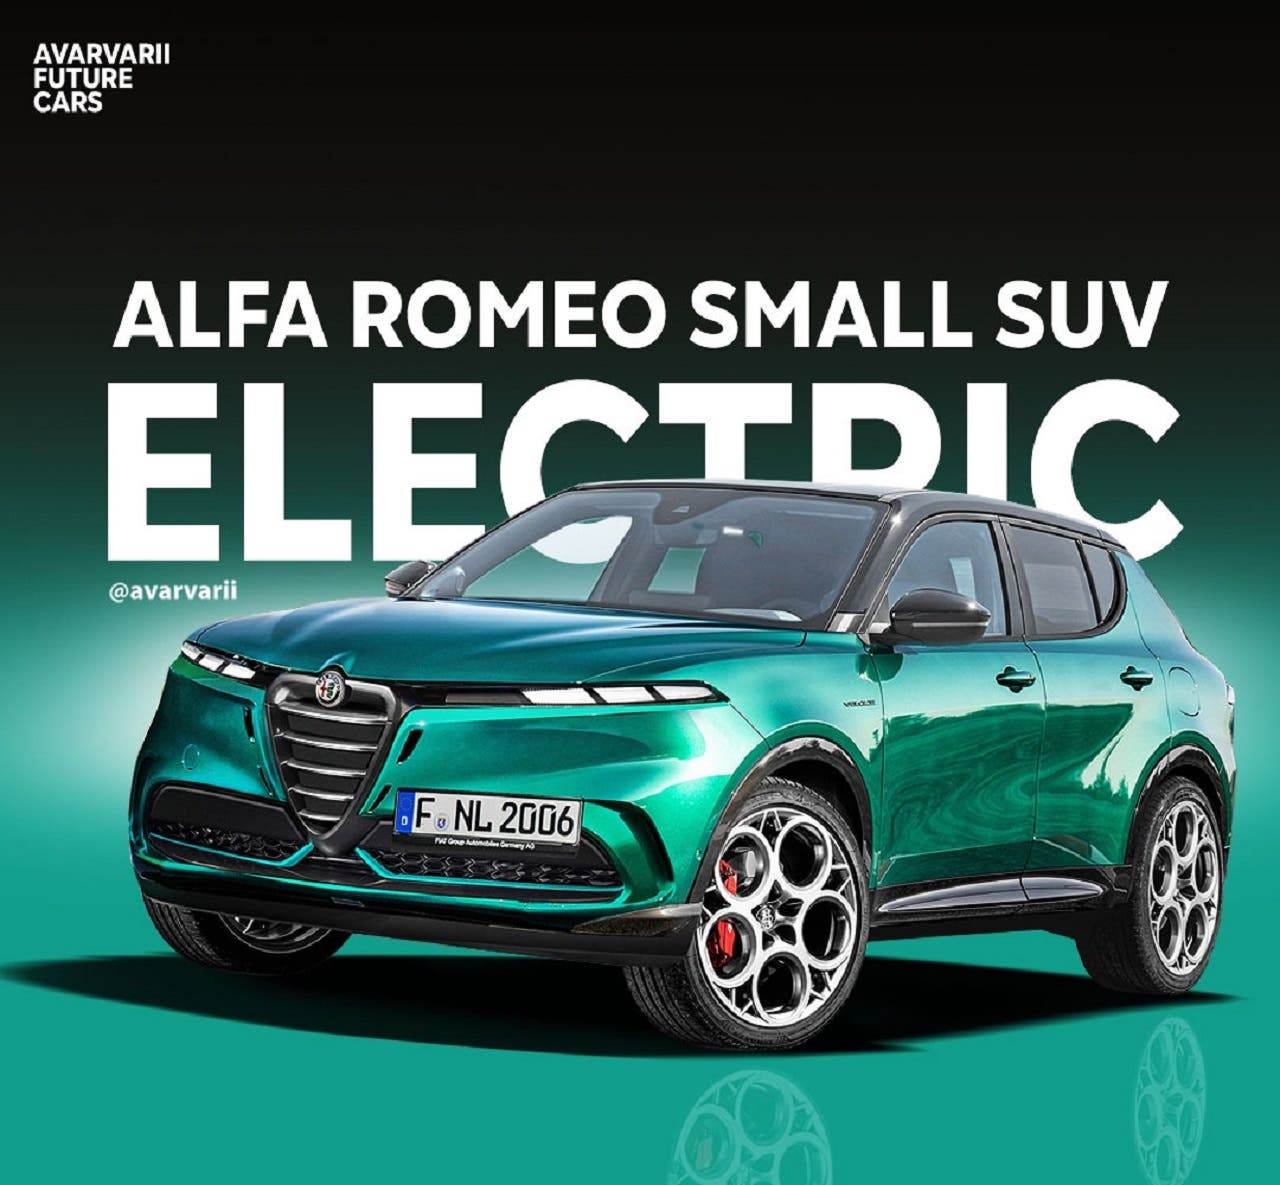 Alfa Romeo B-SUV: sorpresa prezzo per il nuovo modello? - ClubAlfa.it